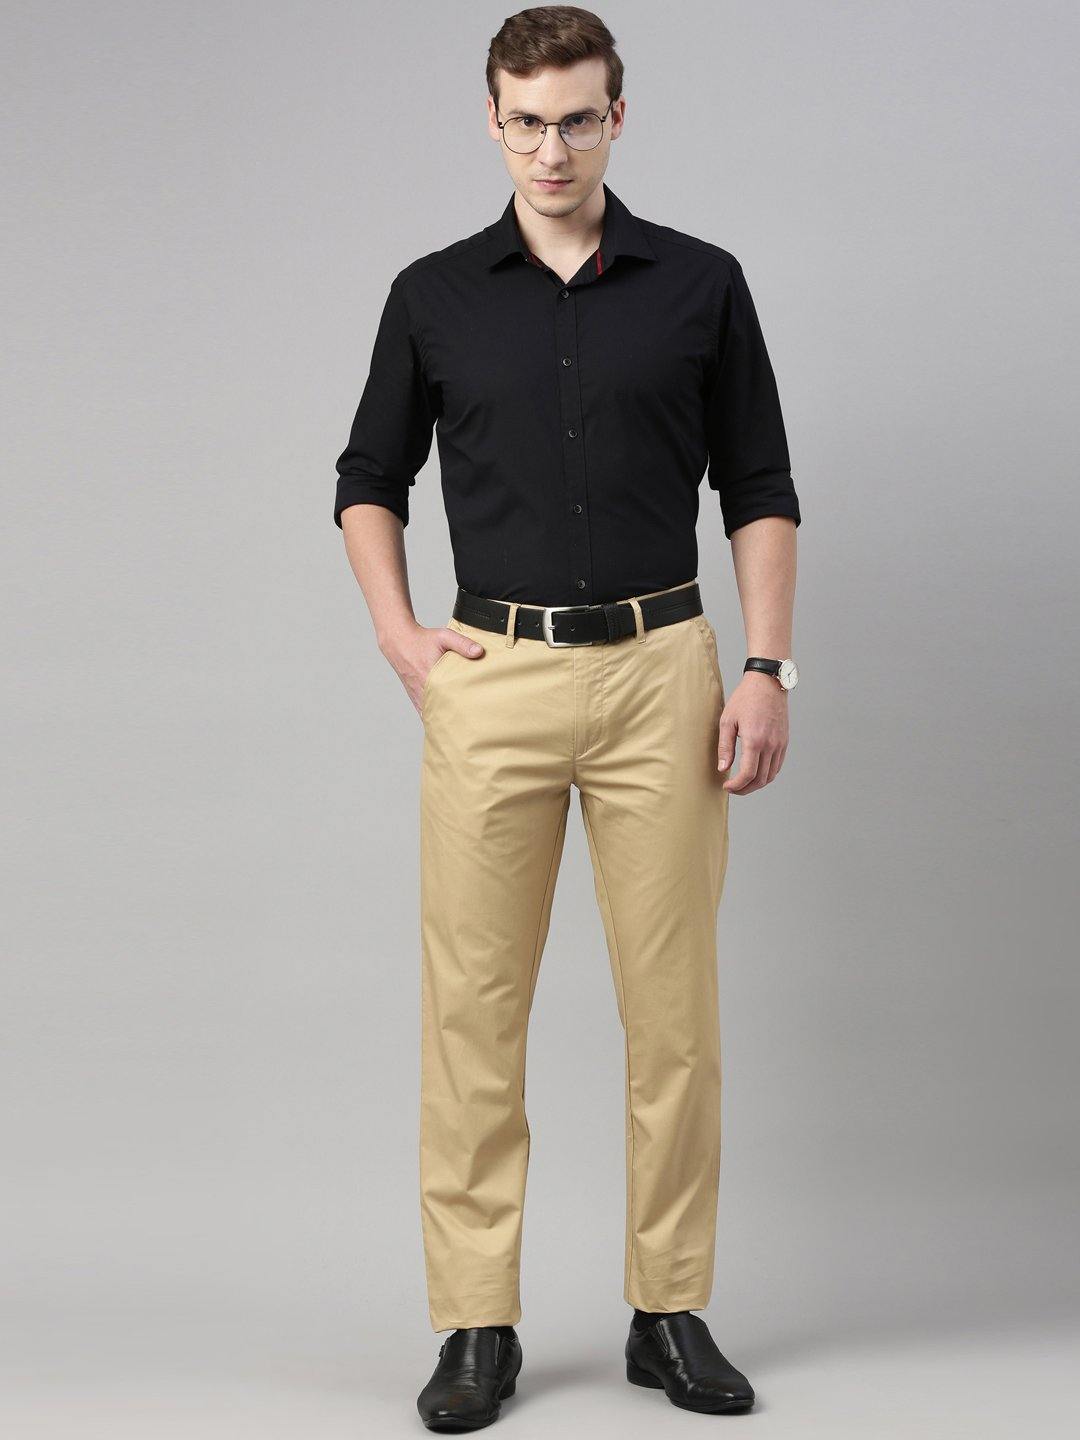 Maize Light Brown PlainSolid Premium Cotton Pant For Men